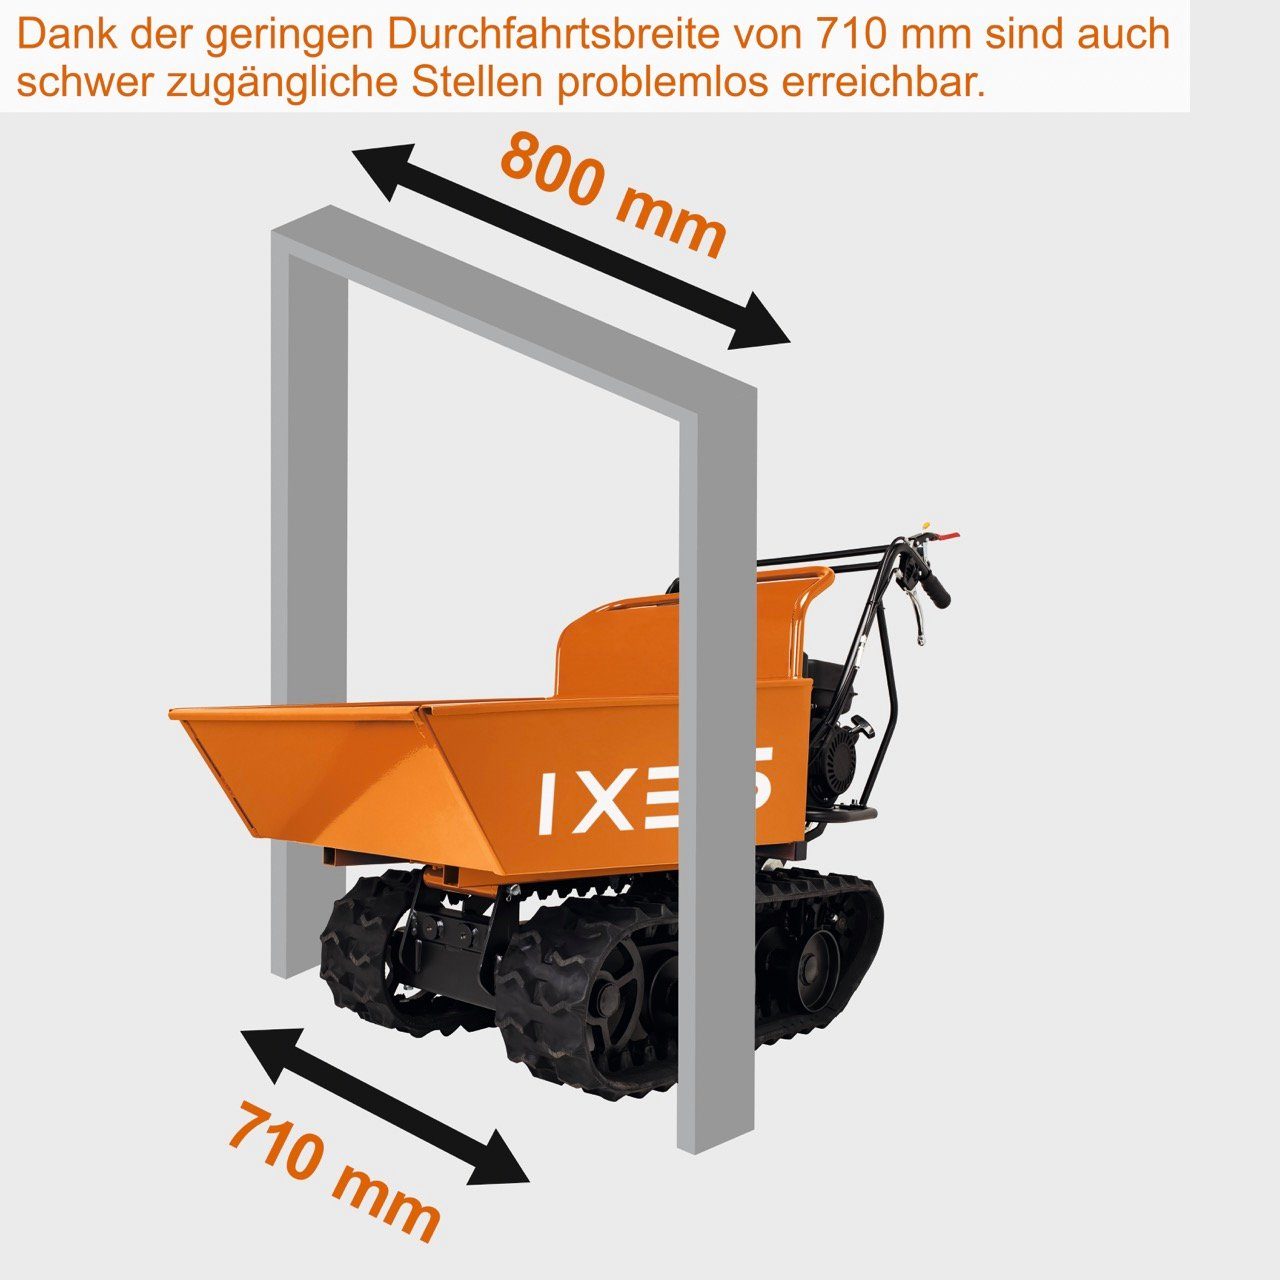 Raupendumper IXES Motorschubkarre l Minidumper 115.8 Dumper Kettendumper, 400kg Raupendumper Scheppach